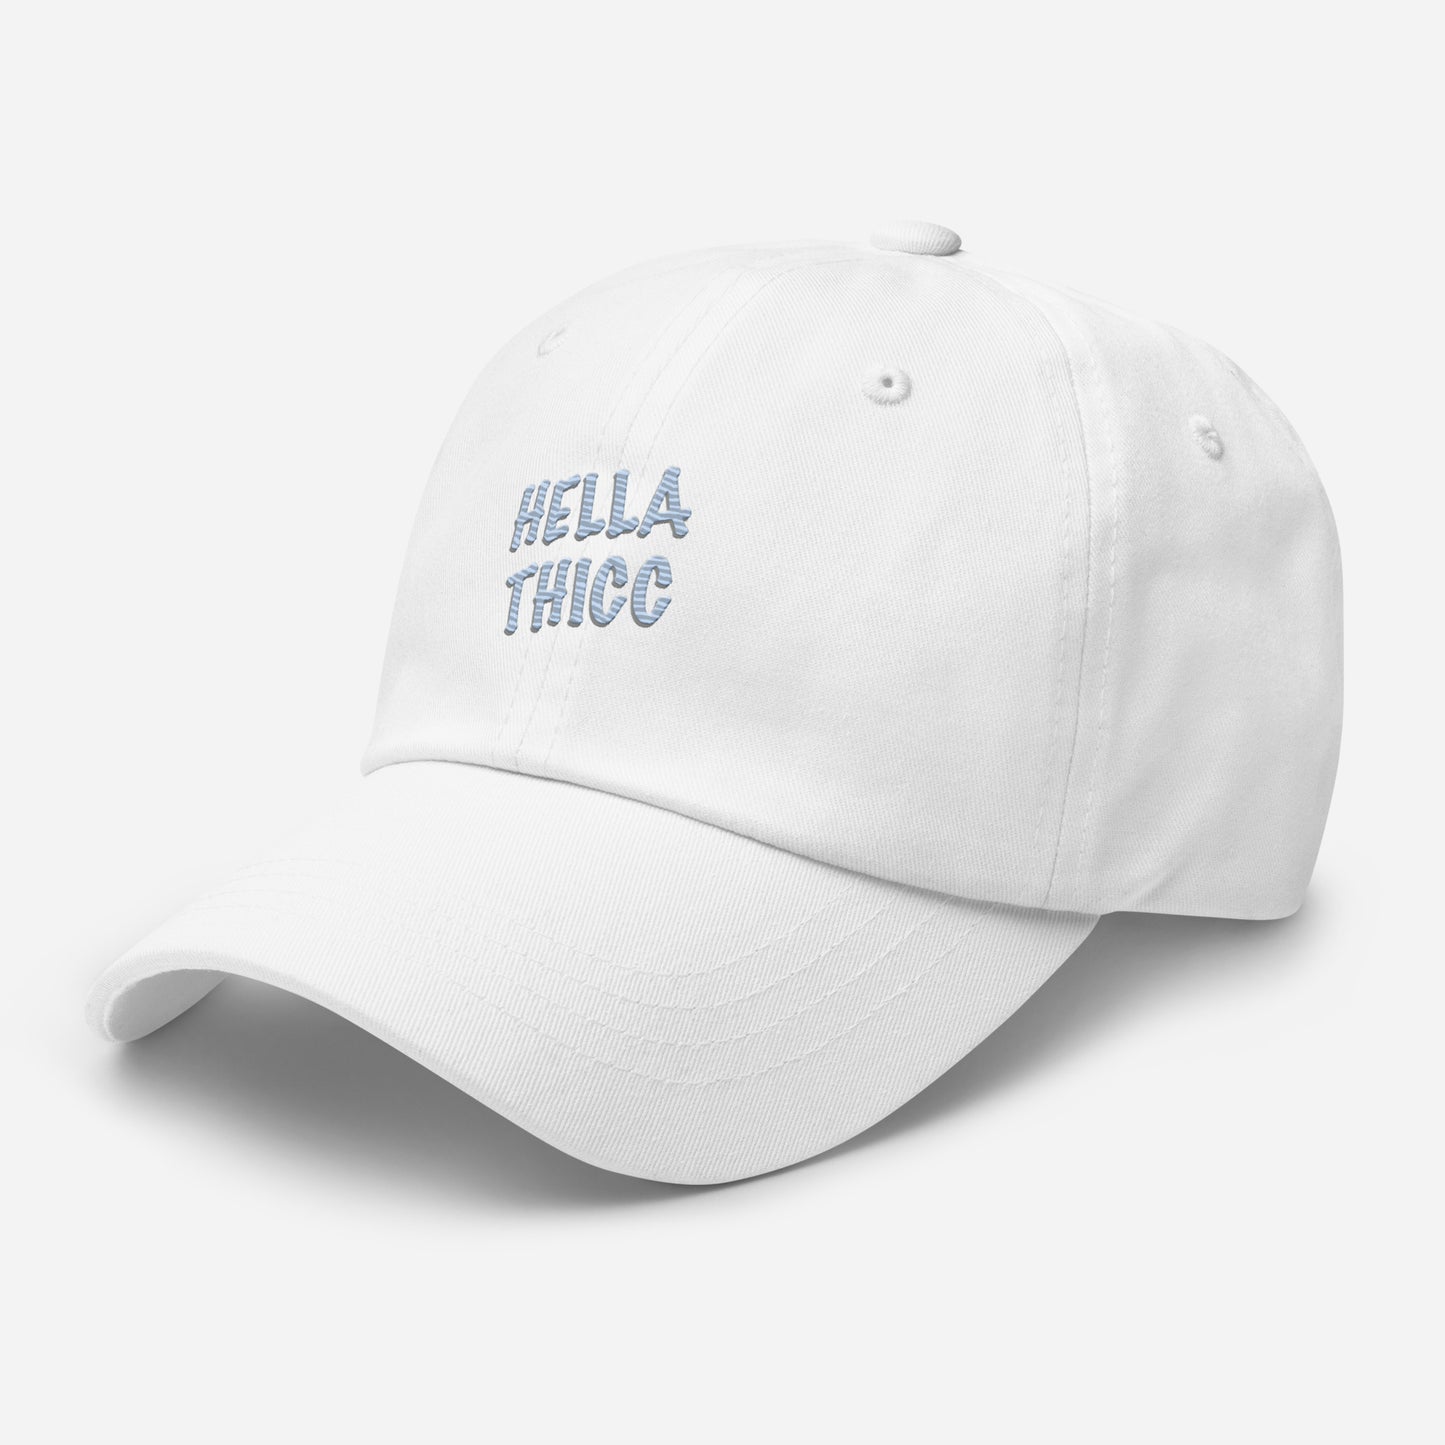 Hella Thicc Dad hat